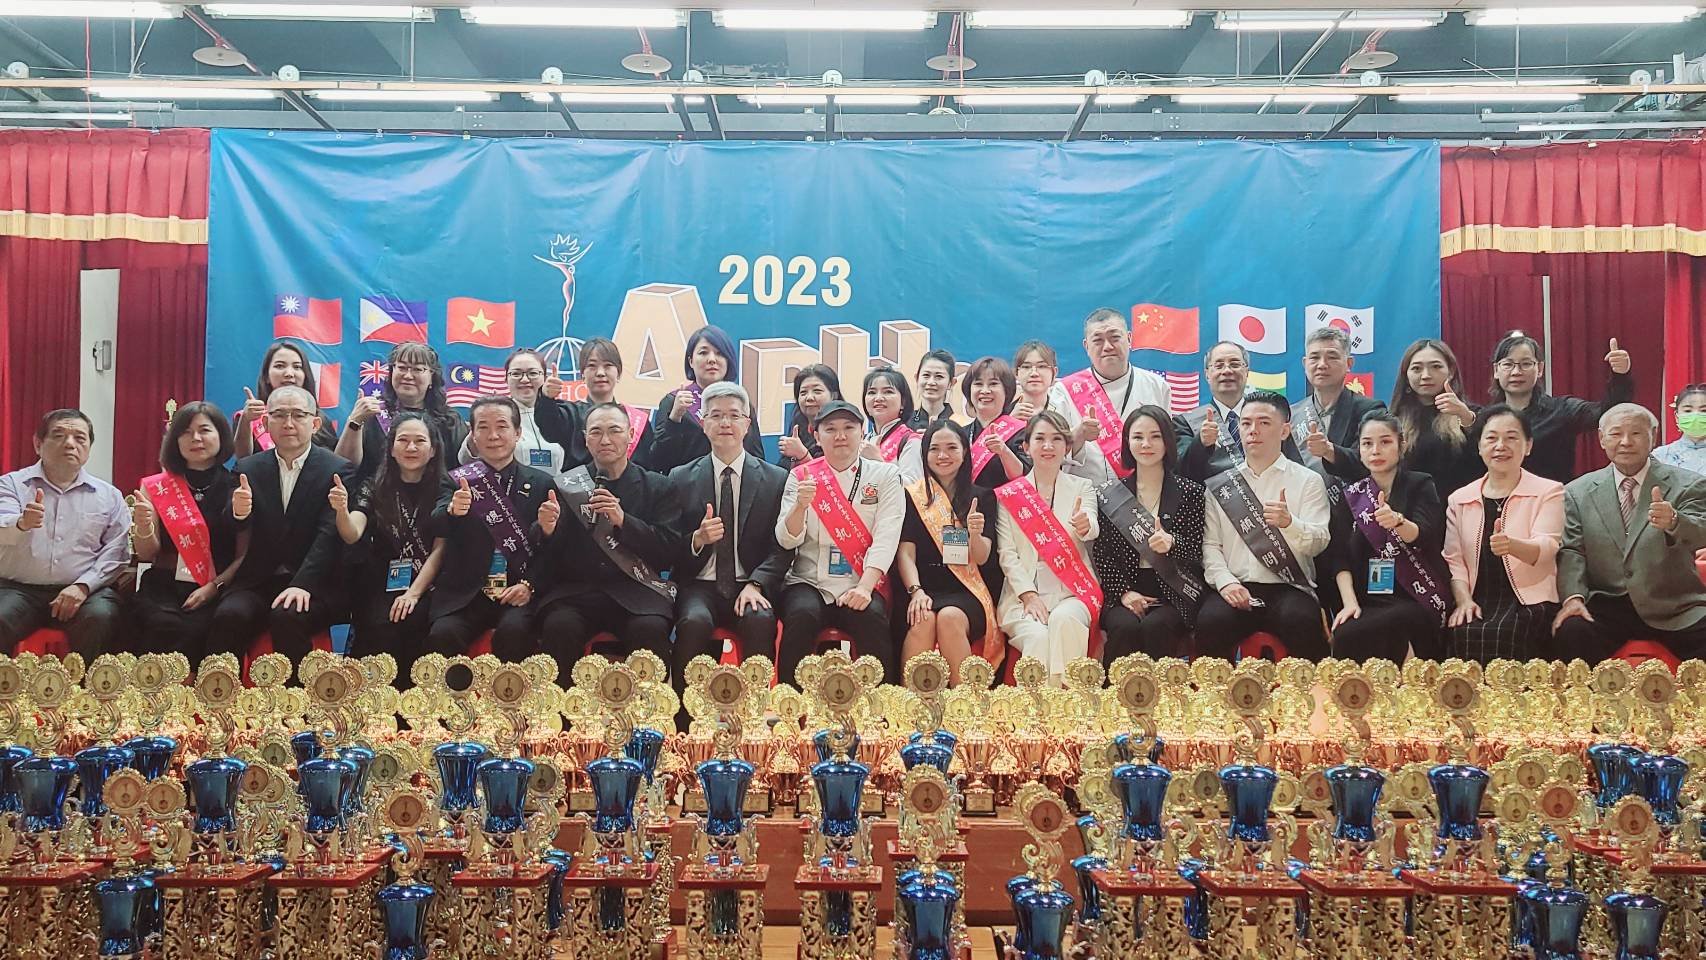 2023中華奧林匹克盃美業交流競技暨授證頒獎典禮-活動競爭激烈各個都有好成績表現